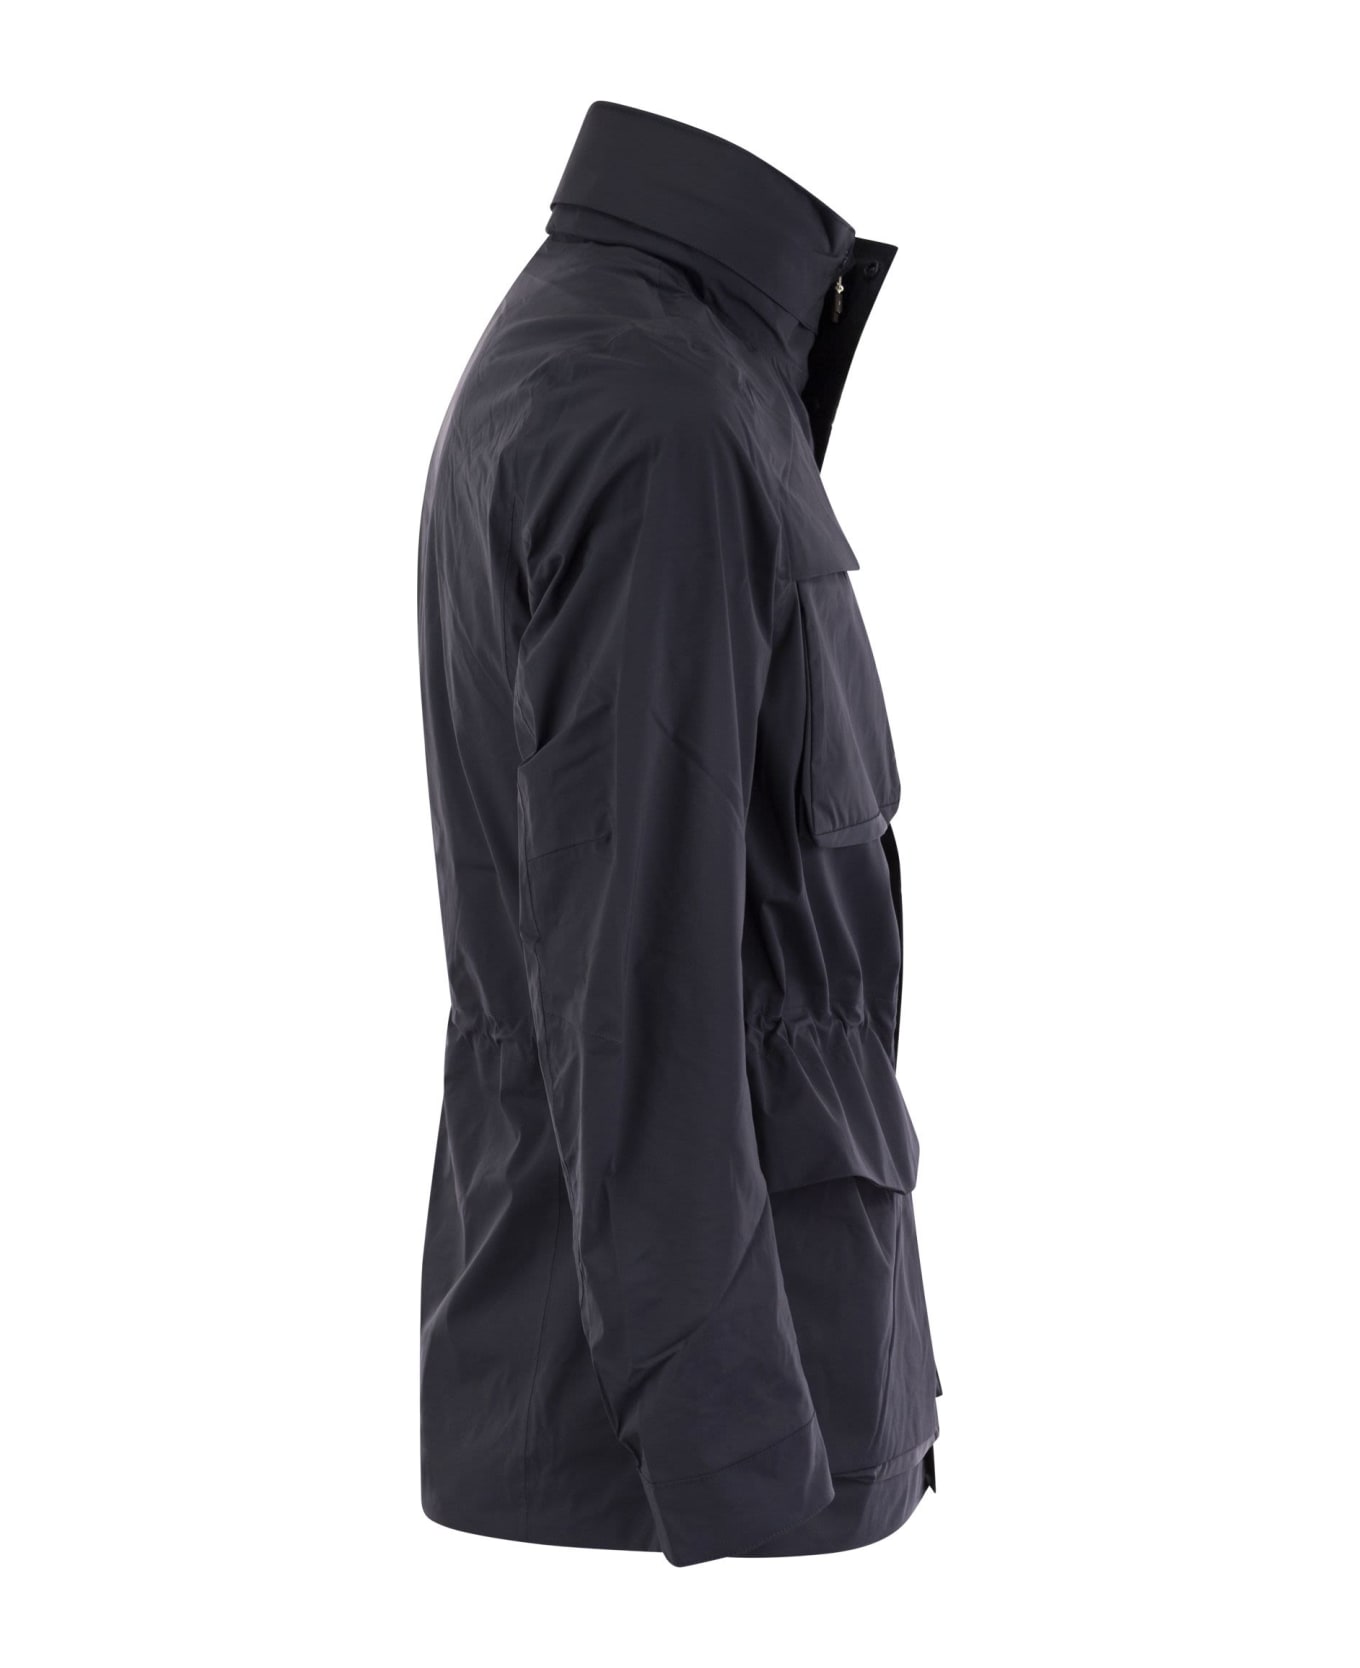 K-Way Manfield Jacket In Waterproof Fabric Jacket - Blue Depth ジャケット